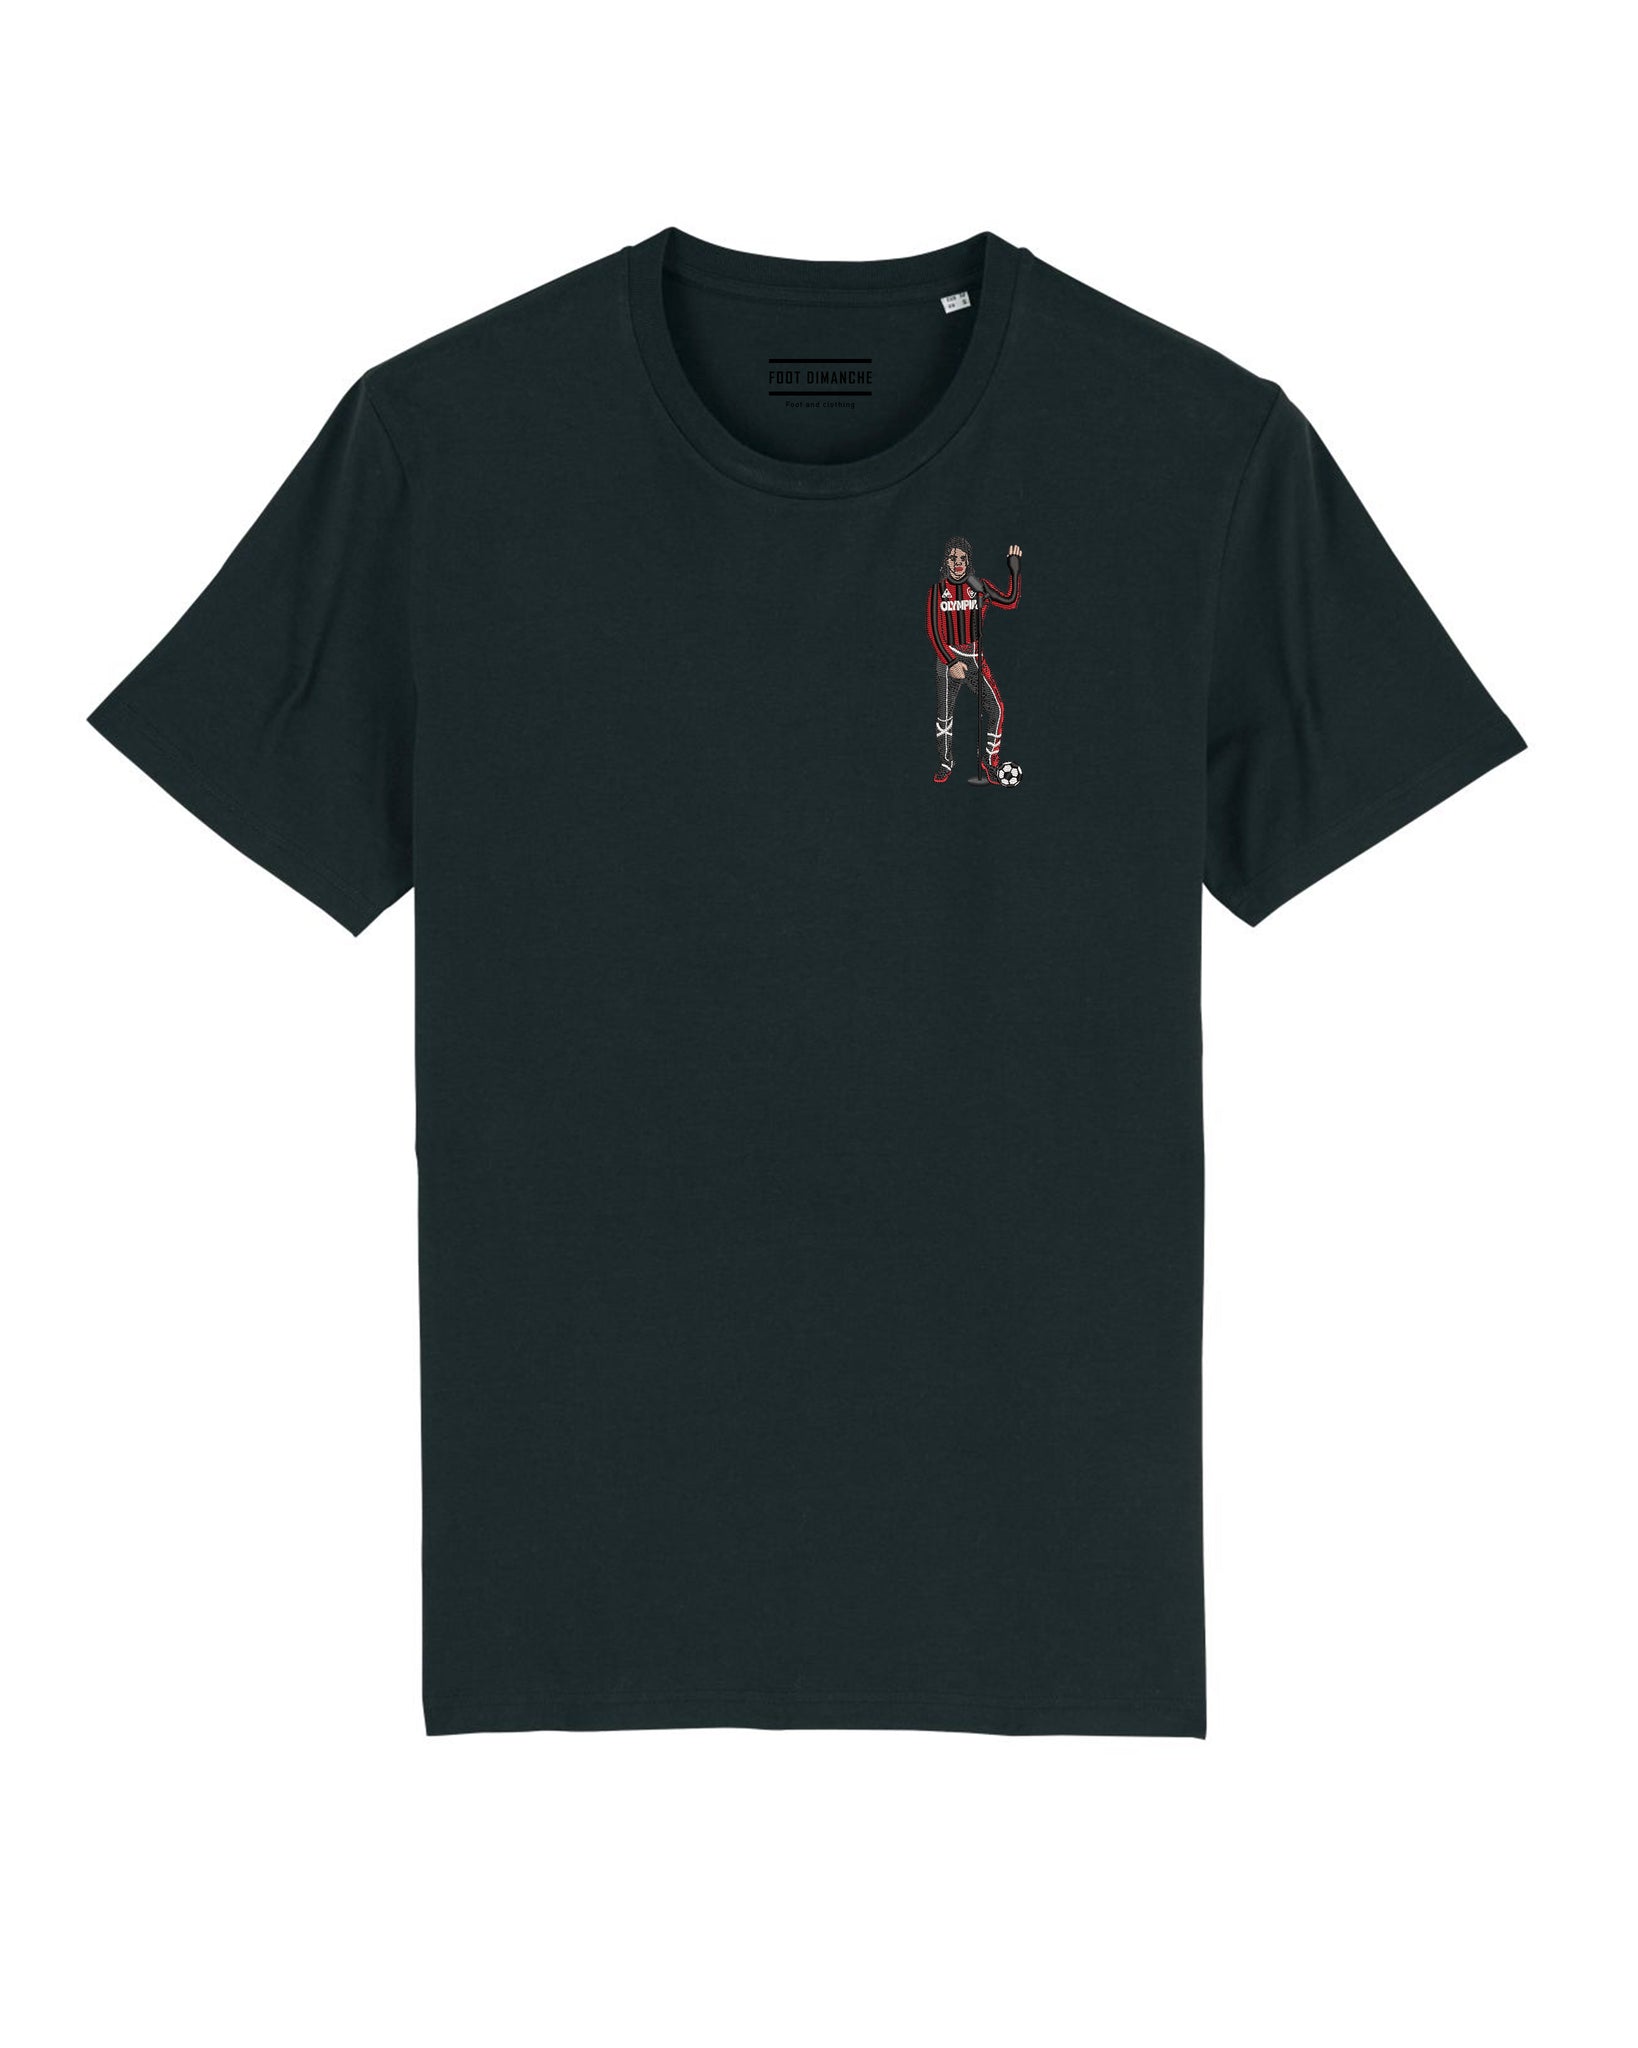 Tee Shirt Michael Jackson